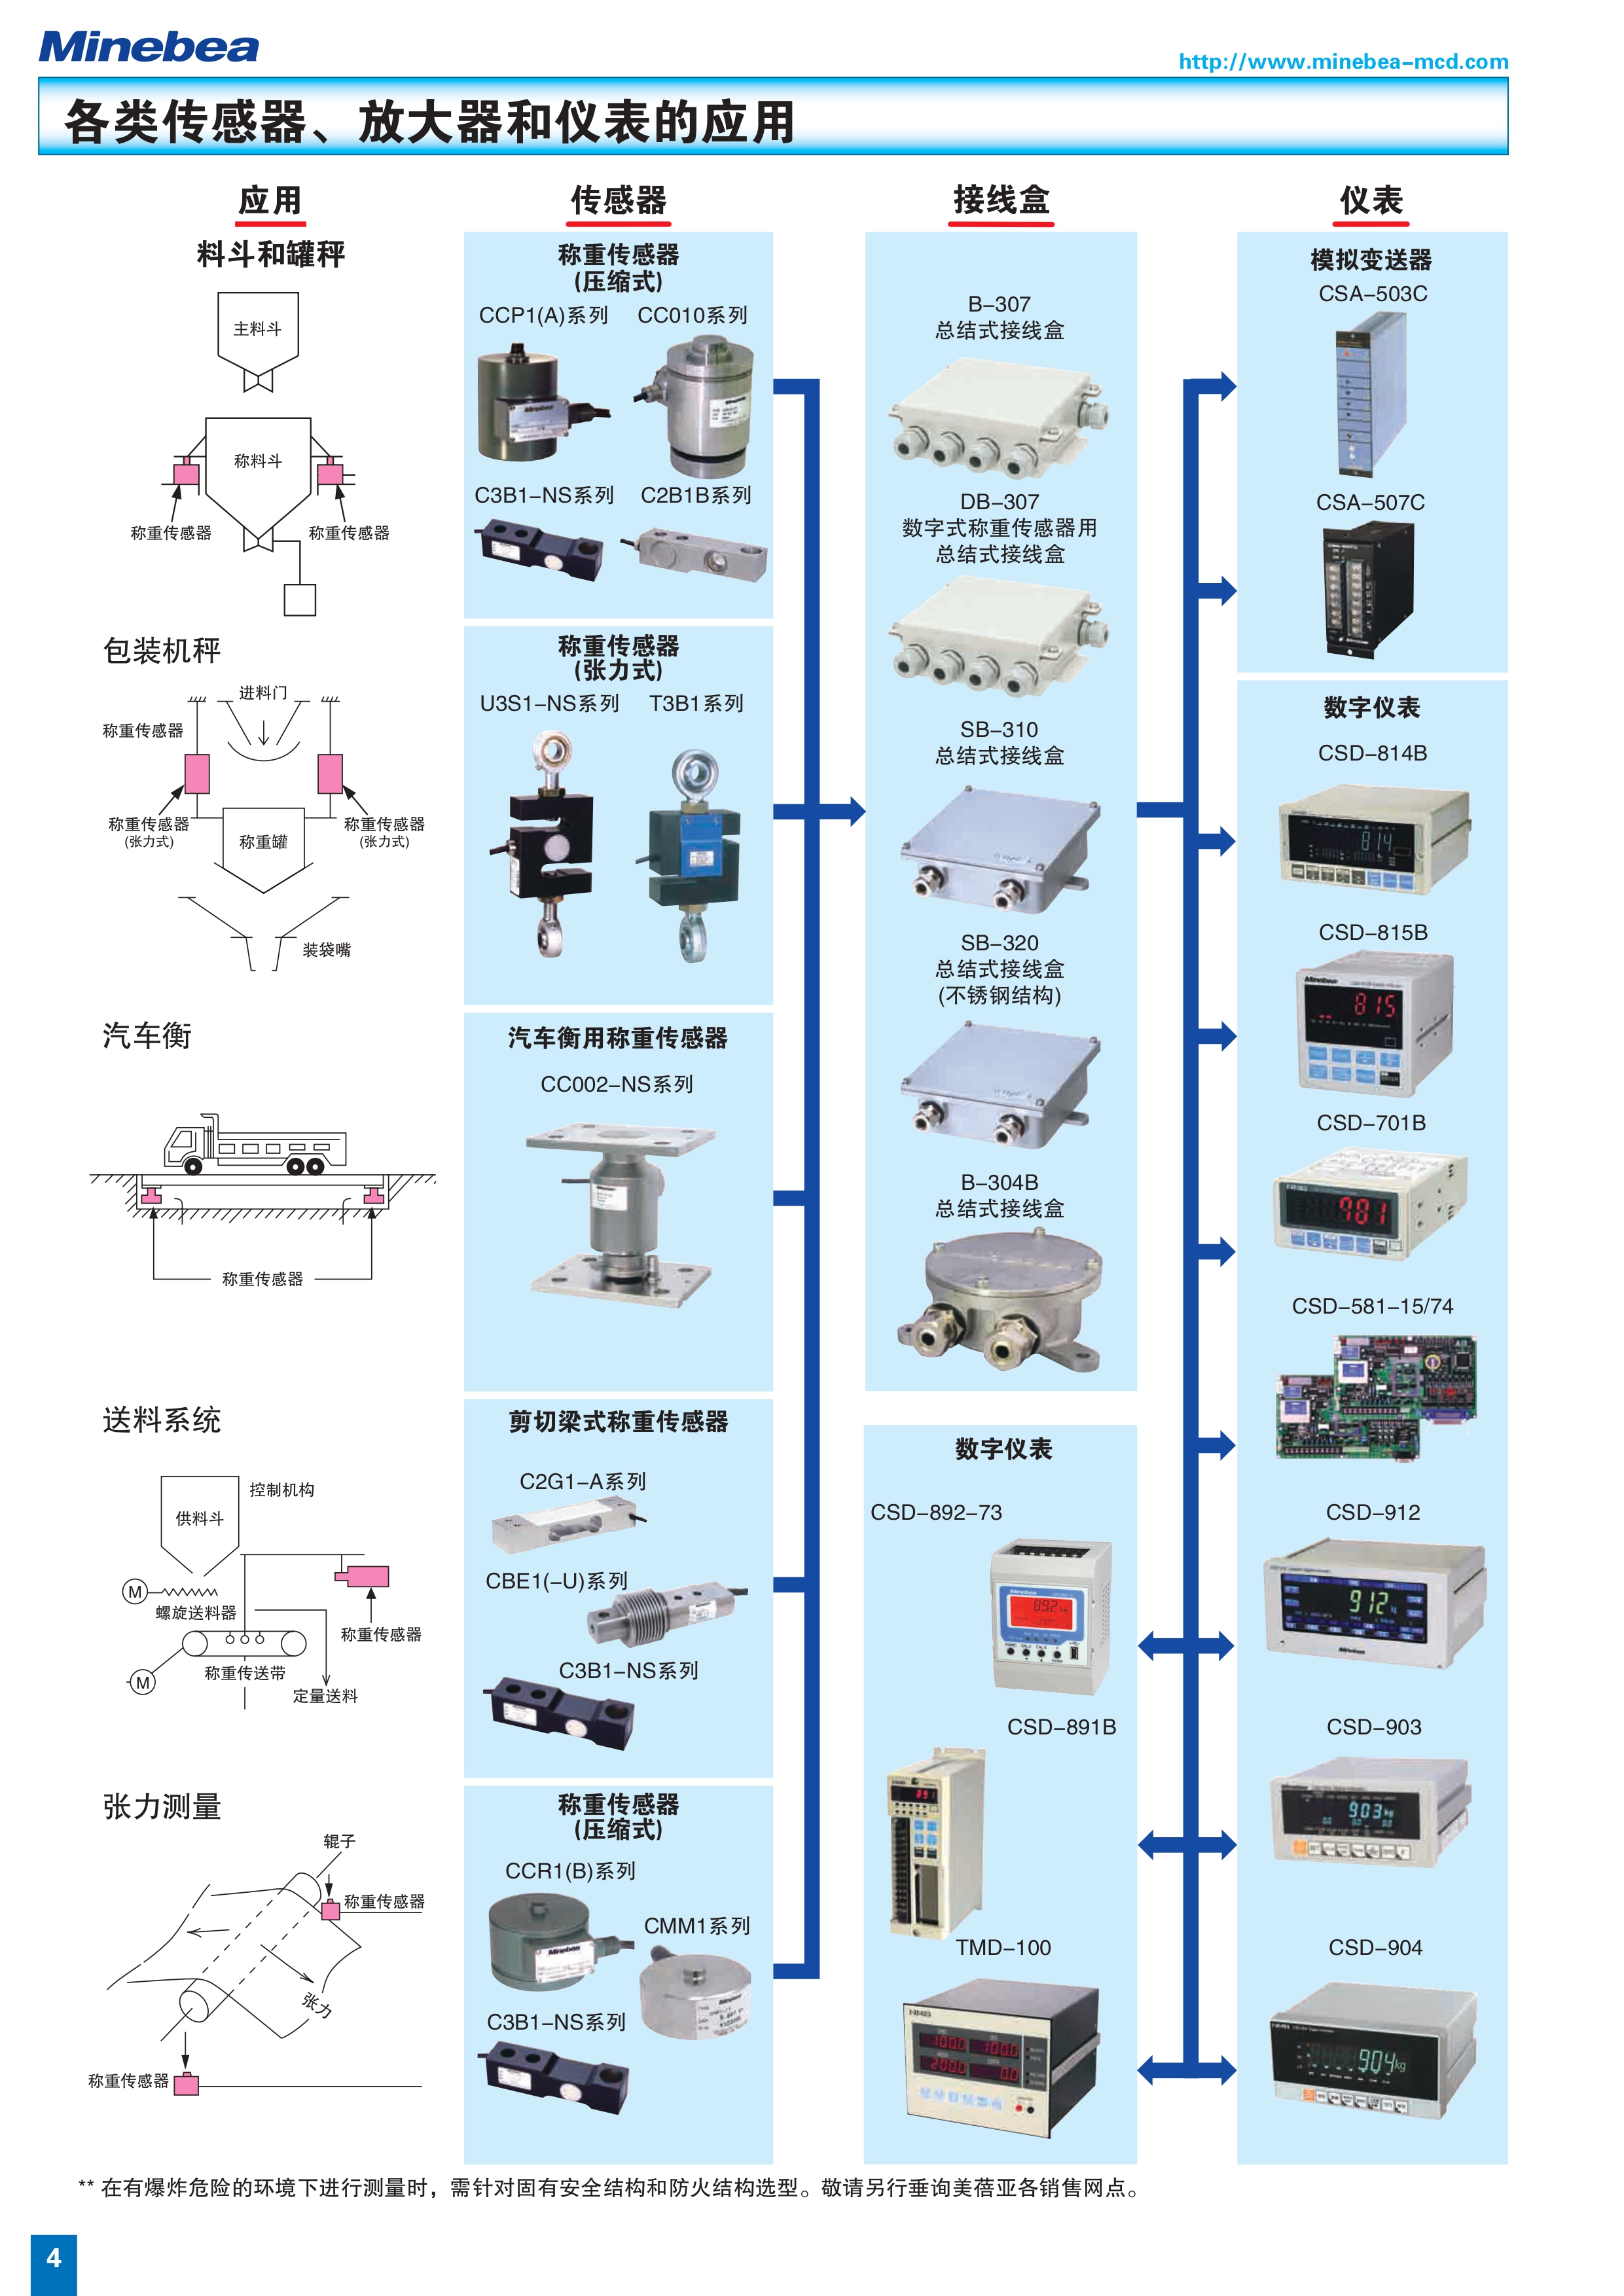 日本美蓓亚传感器产品手册（中文）44_page-0004.jpg